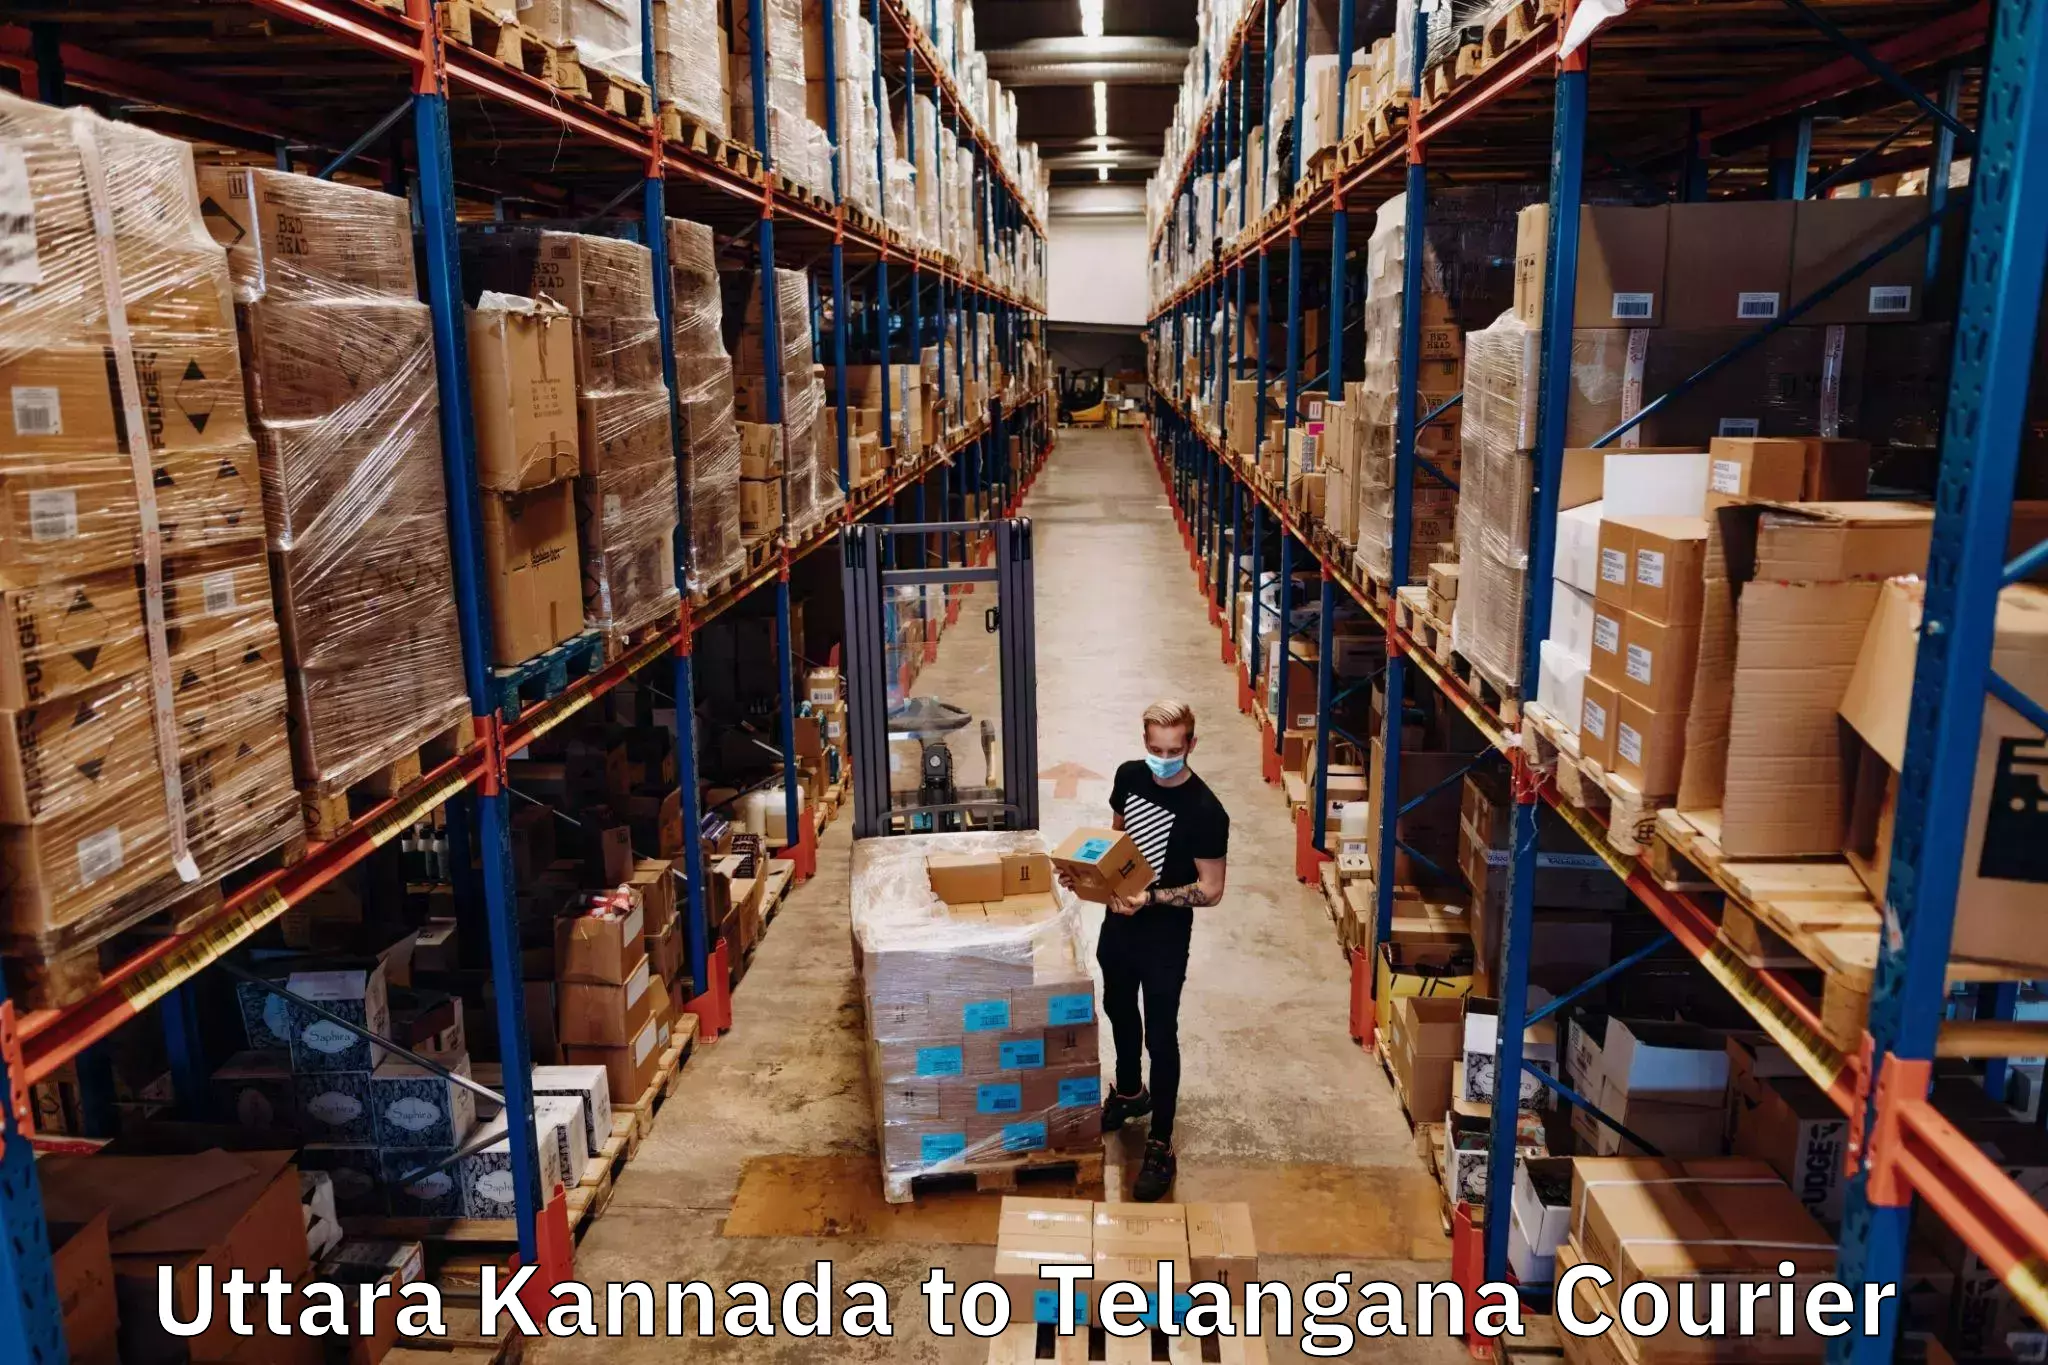 Customized shipping options Uttara Kannada to Shadnagar